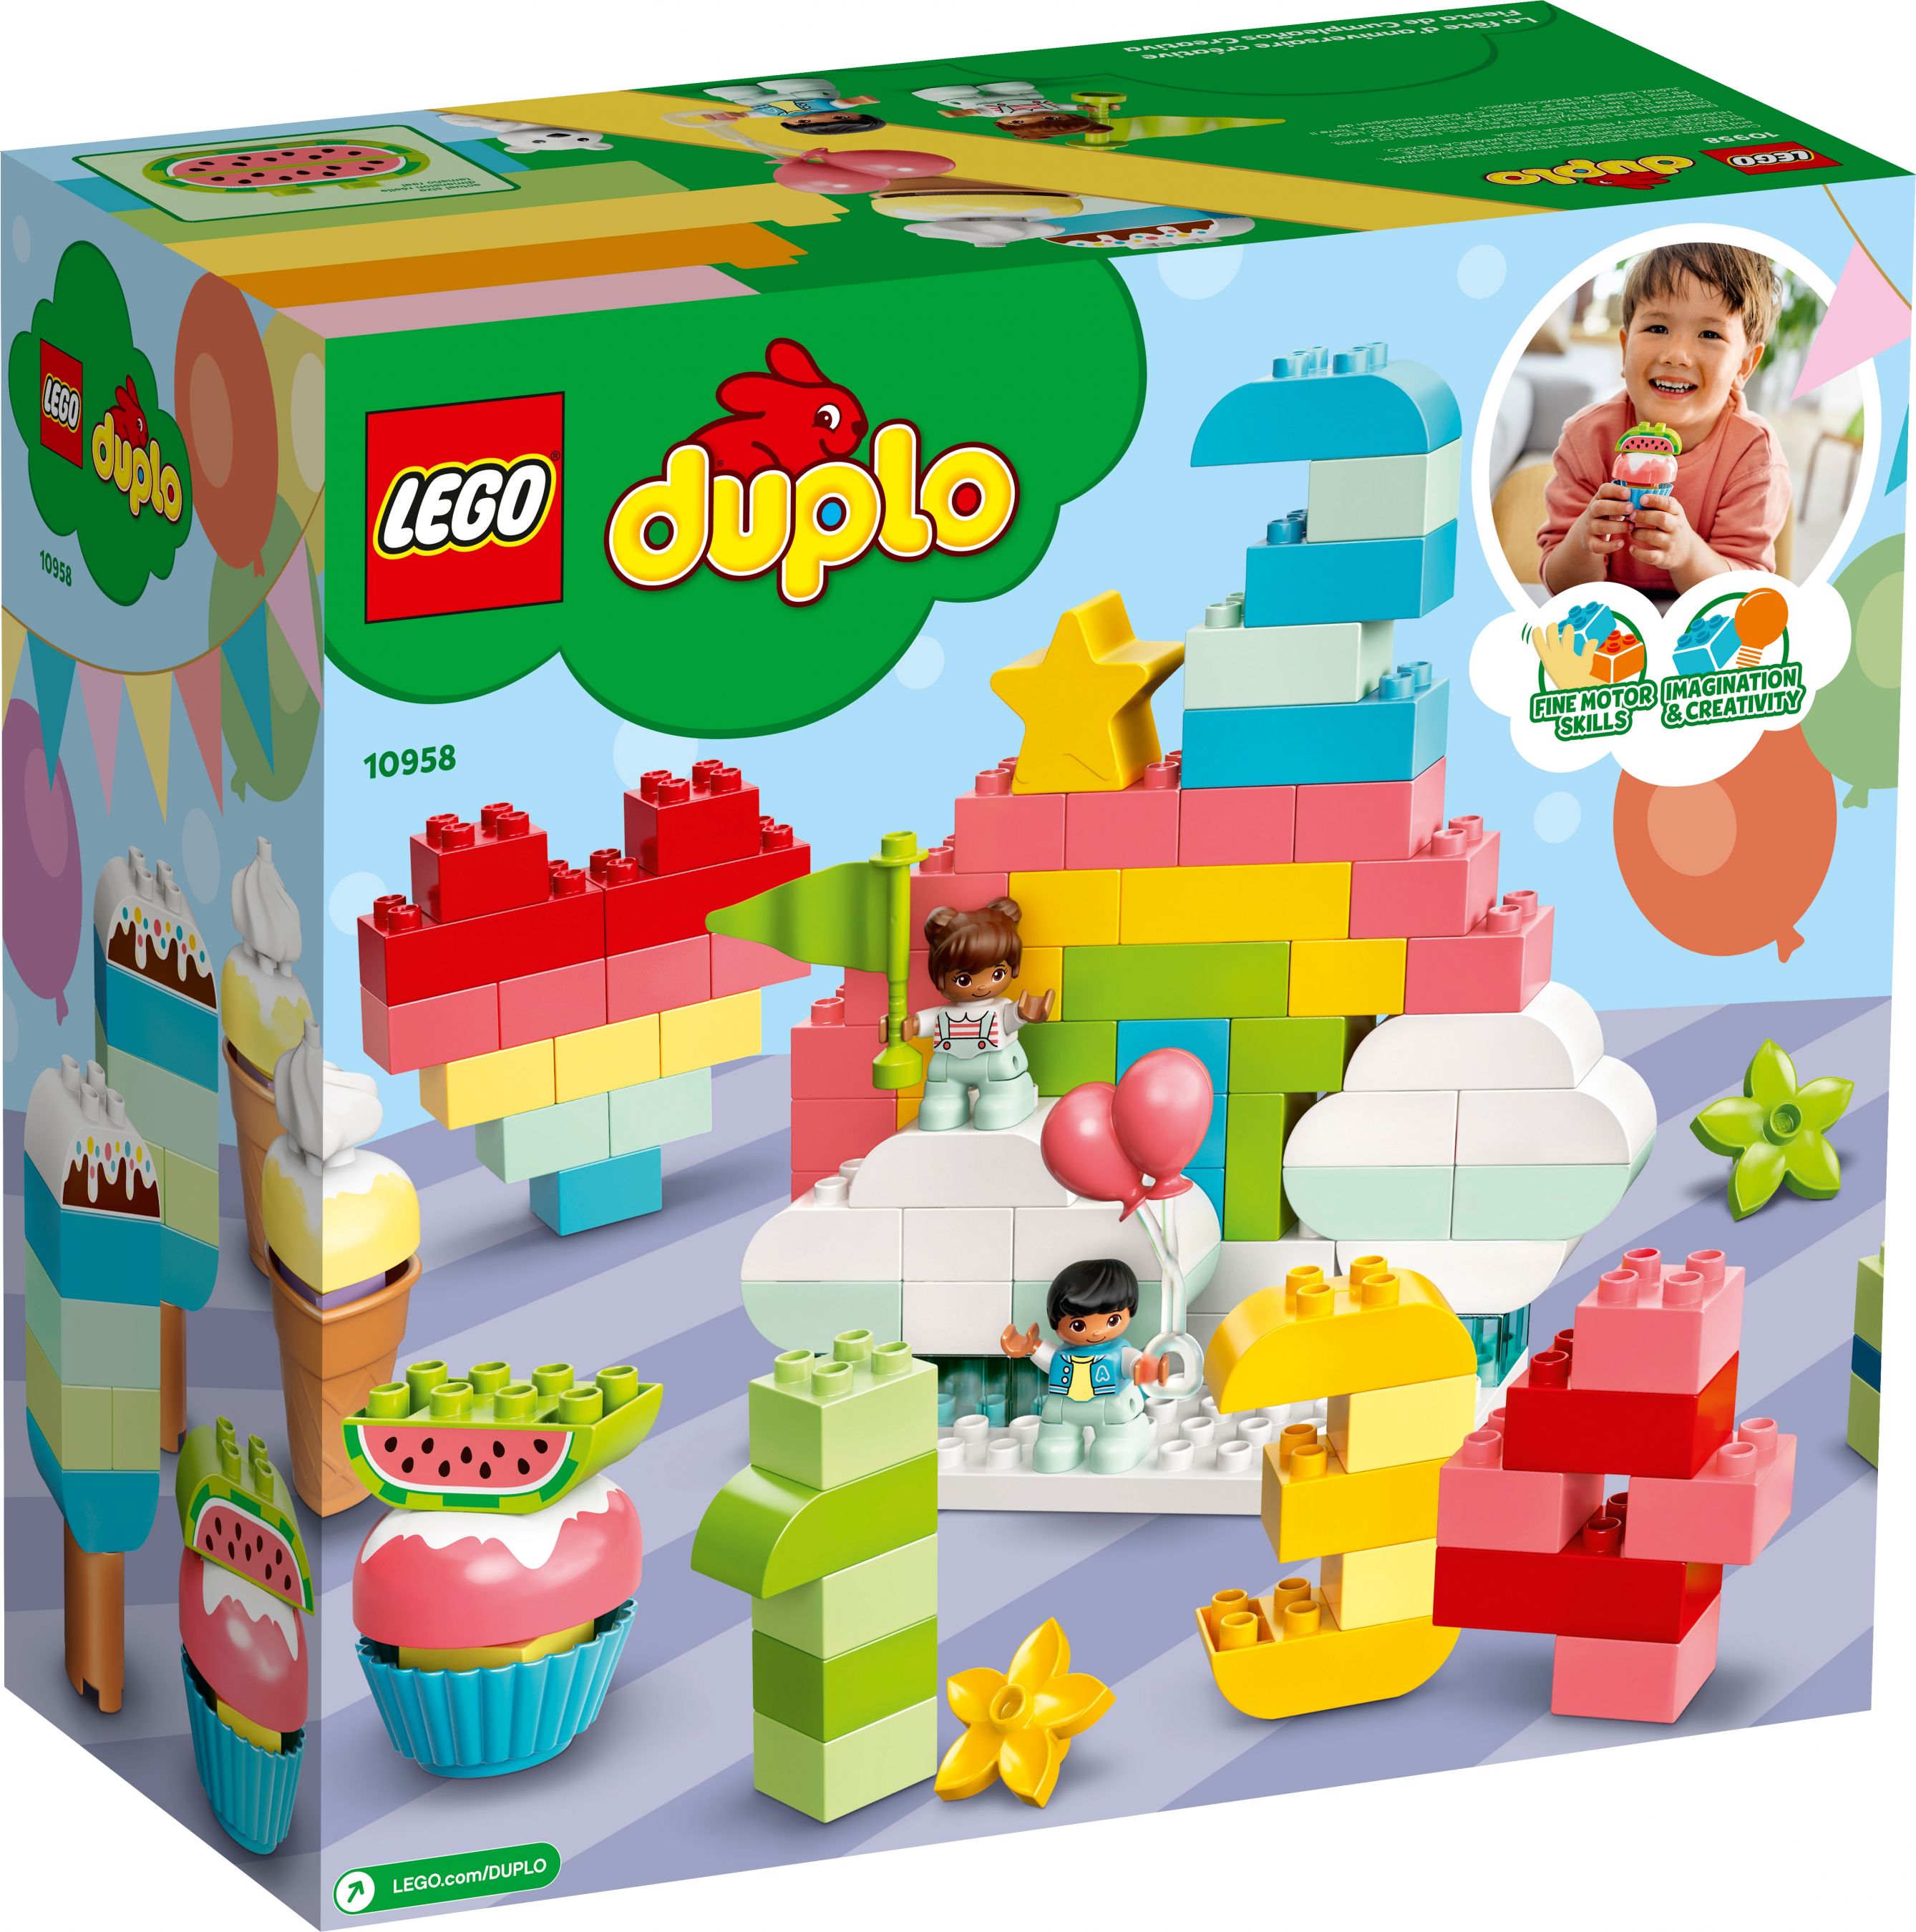 LEGO Duplo 10958 Kreative Geburtstagsparty LEGO_10958_alt10.jpg